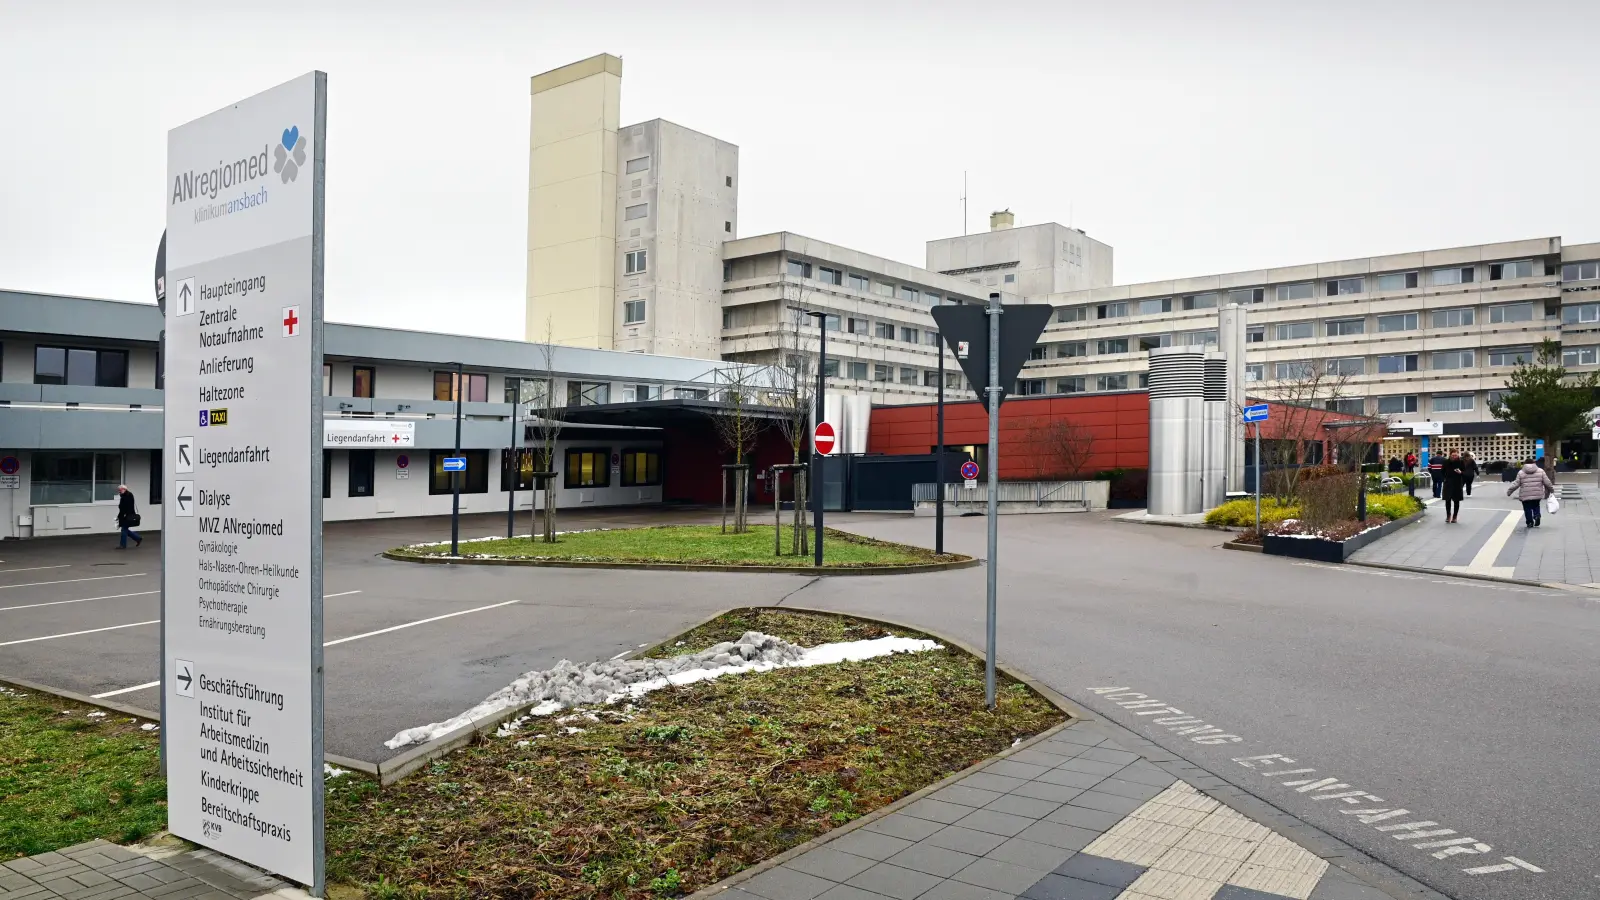 Für das Klinikum in Ansbach sowie seine weiteren Einrichtungen im Landkreis Ansbach hebt der ANregiomed-Verbund die Coronavirus-Schutzmaßnahmen auf. (Foto: Jim Albright)